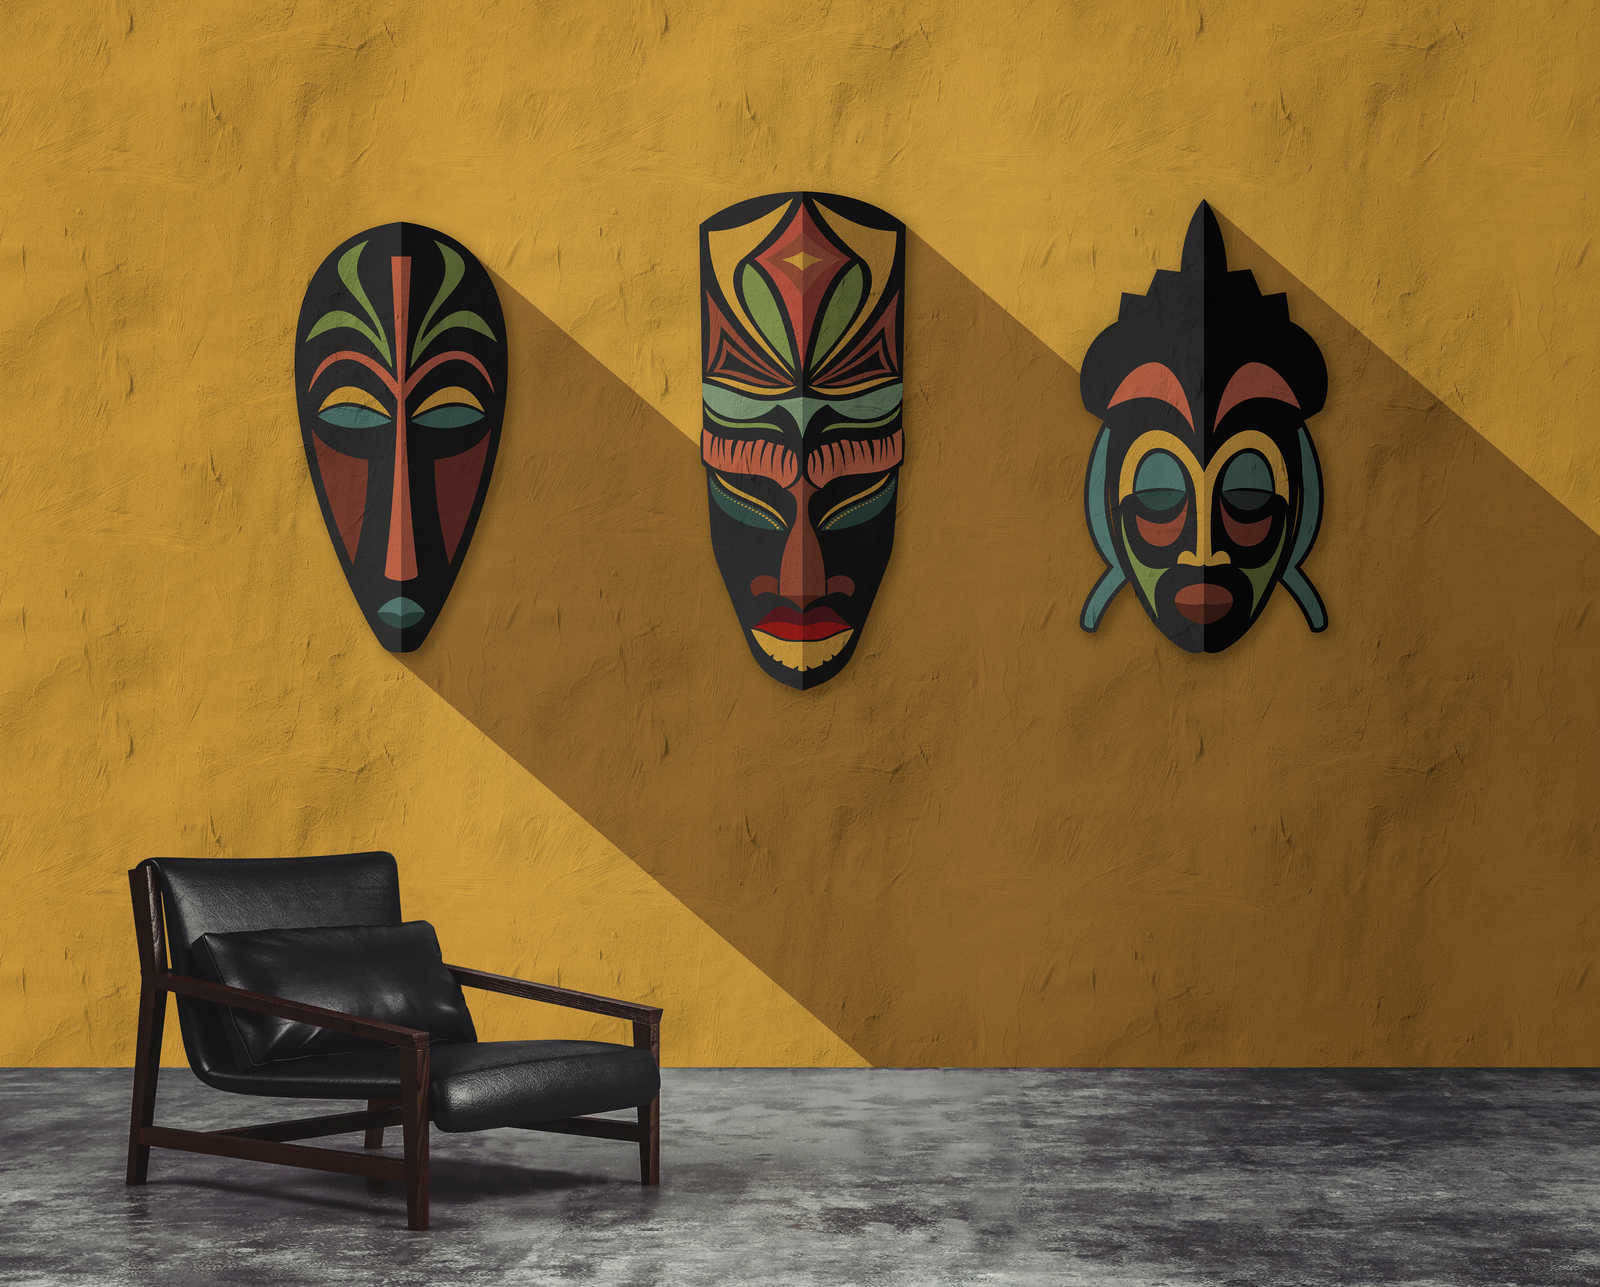             Zulu 1 - Muurschildering mosterdgeel, Afrika maskers Zulu Design
        